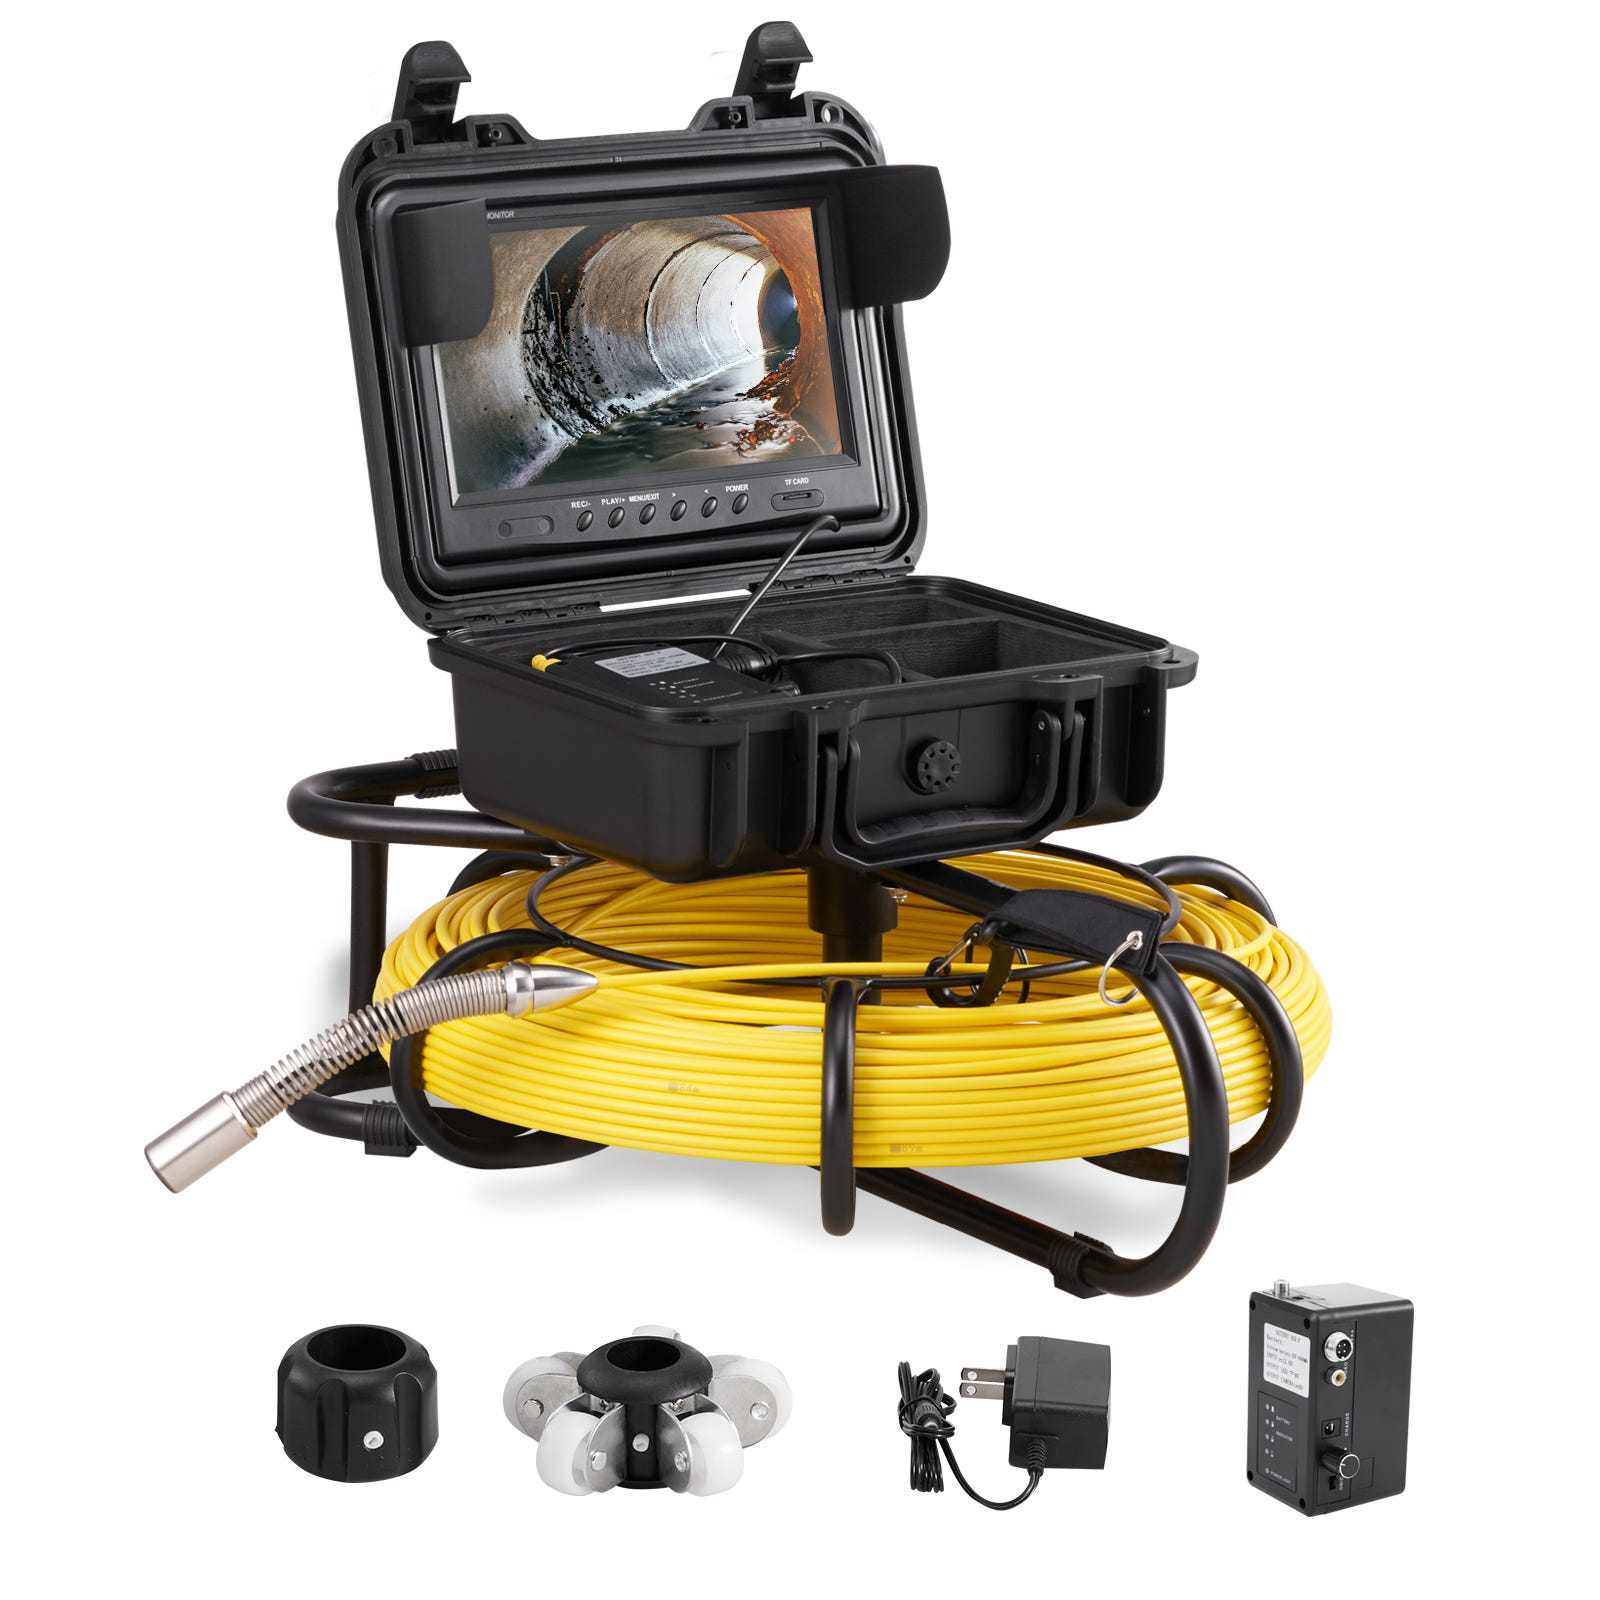 Caméra inspection canalisation caméra endoscopique caméra d